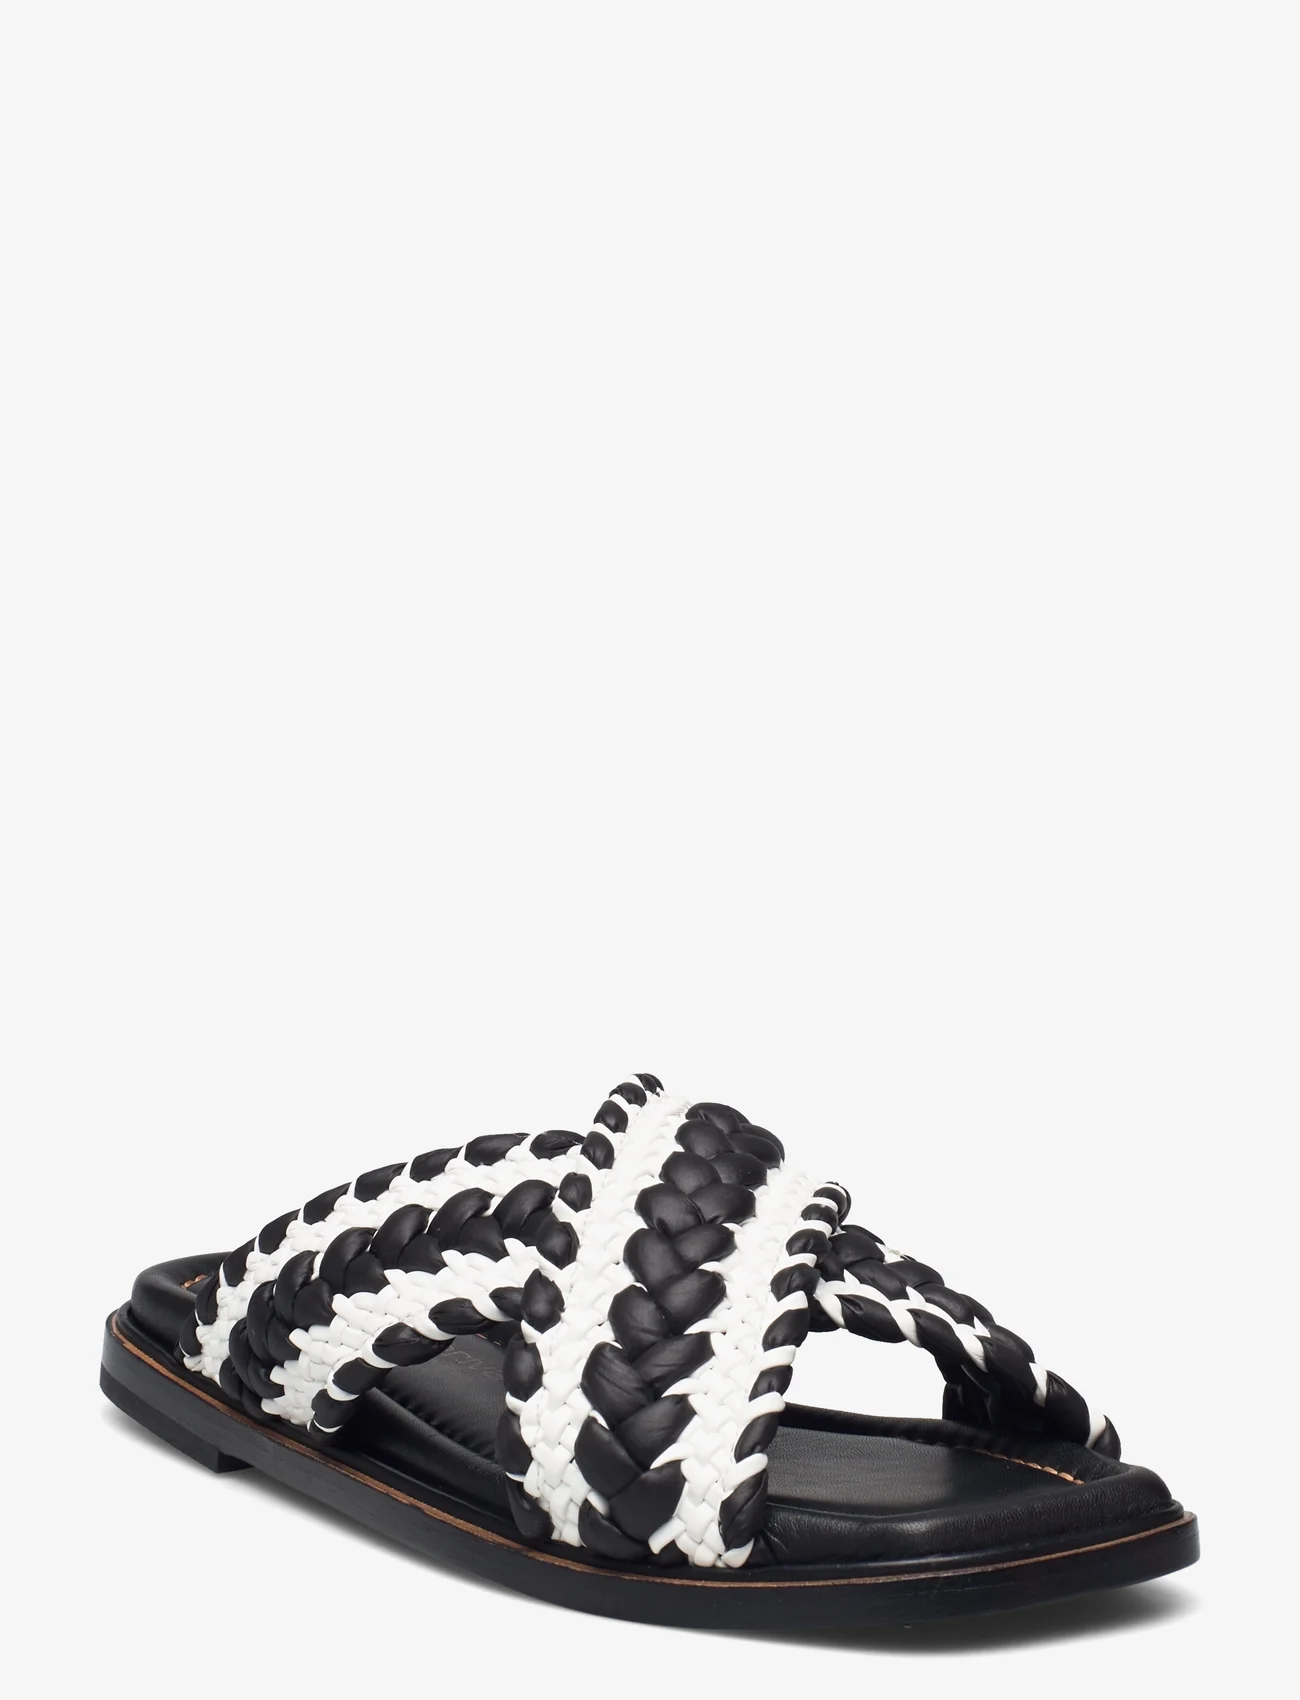 Laura Bellariva - Slip in sandal - platte sandalen - black/white - 0